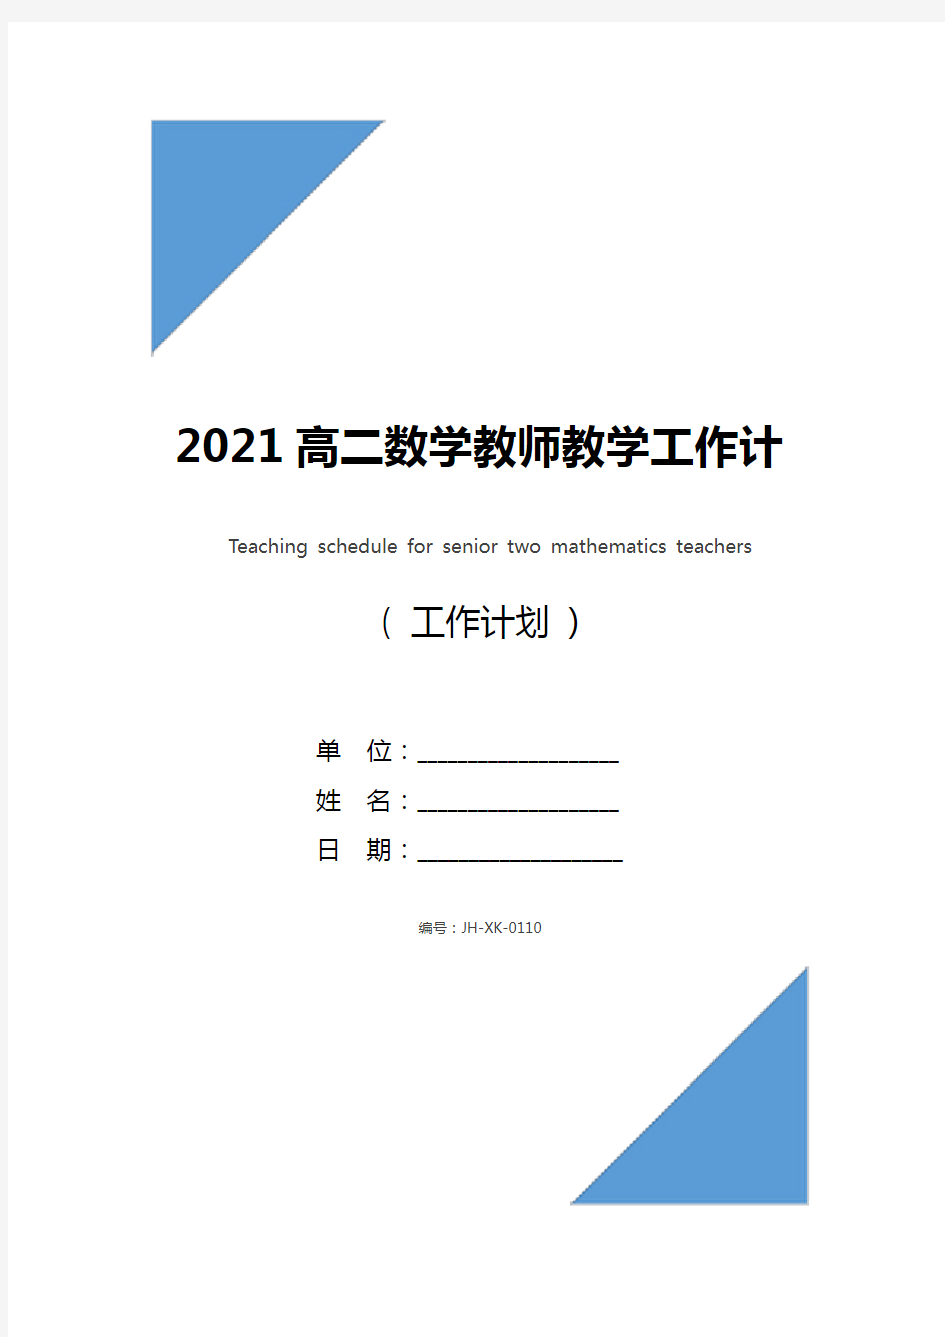 2021高二数学教师教学工作计划表